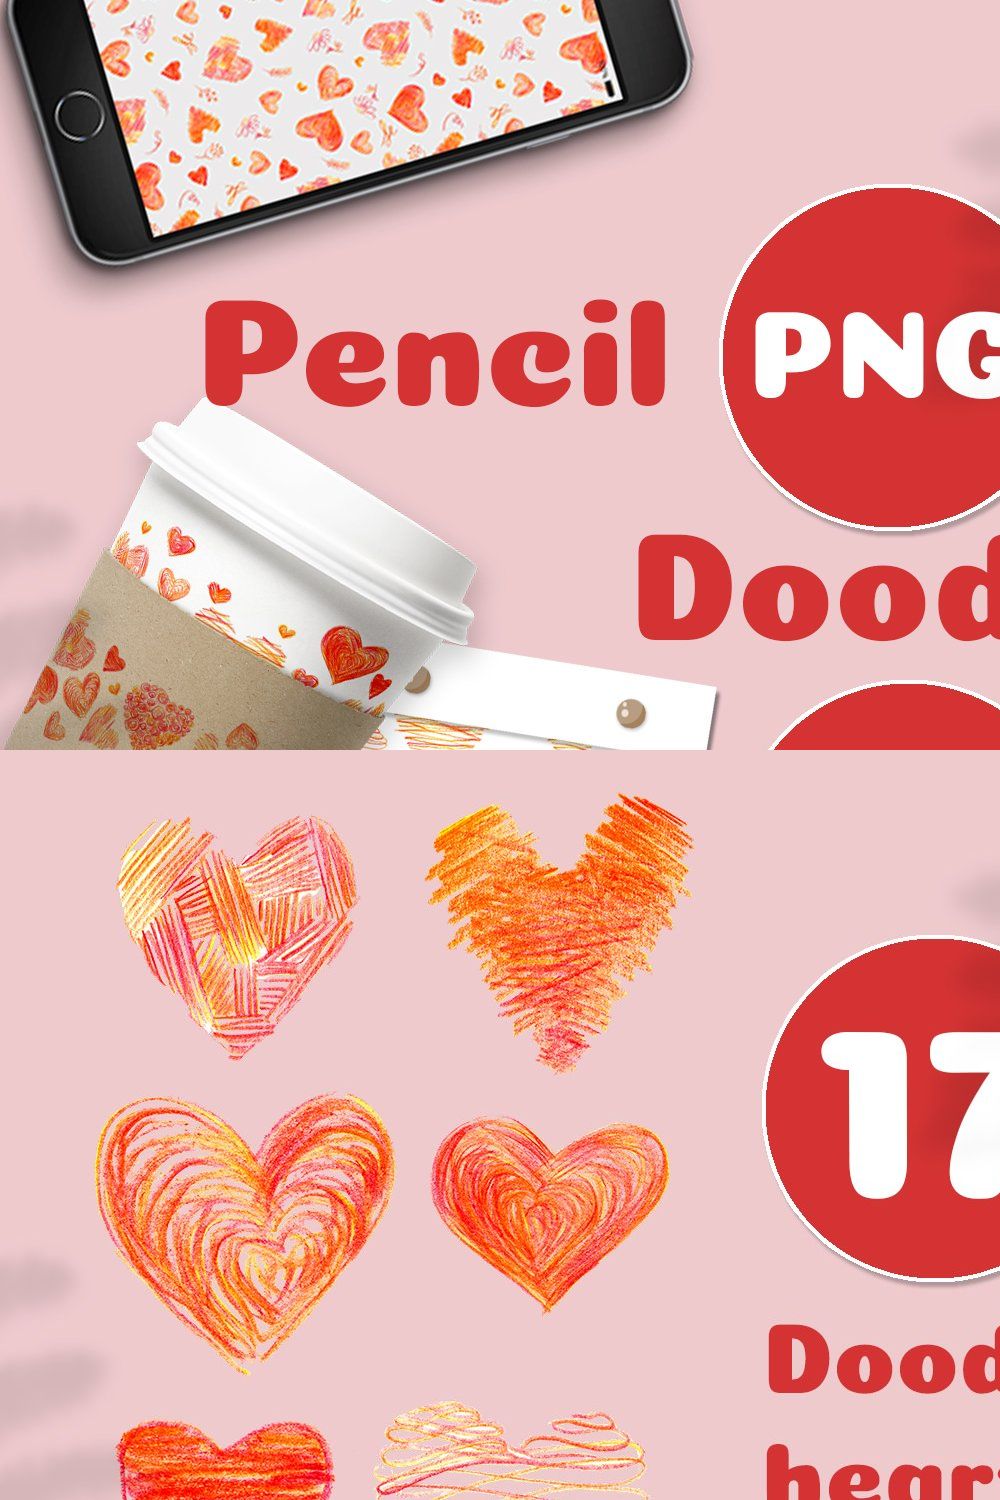 Pencil doodle hearts pinterest preview image.